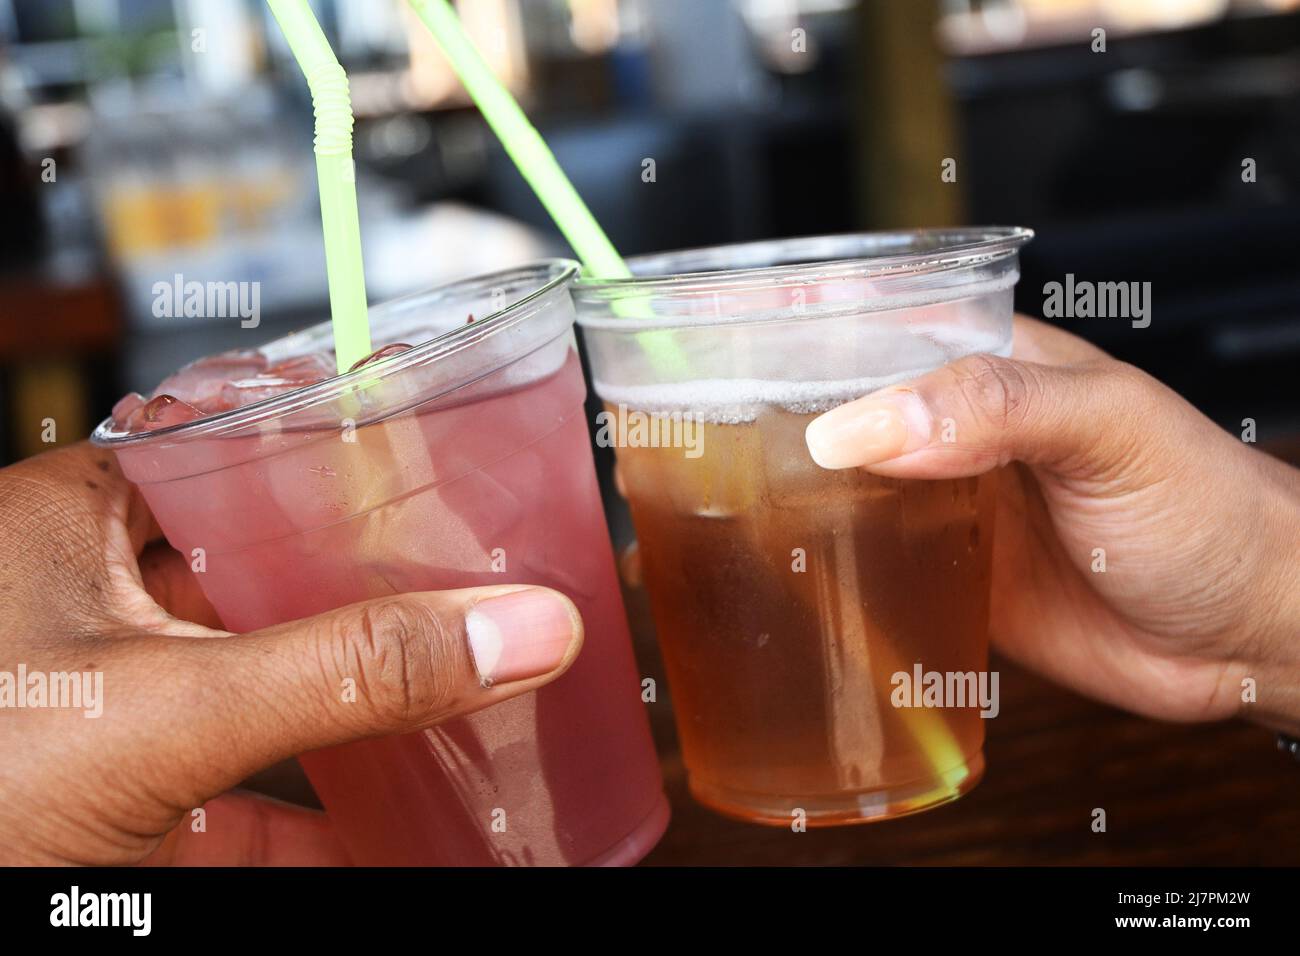 GRAZIE: Una coppia brinda un po' di bevande miste in un bar sulla spiaggia. Foto Stock